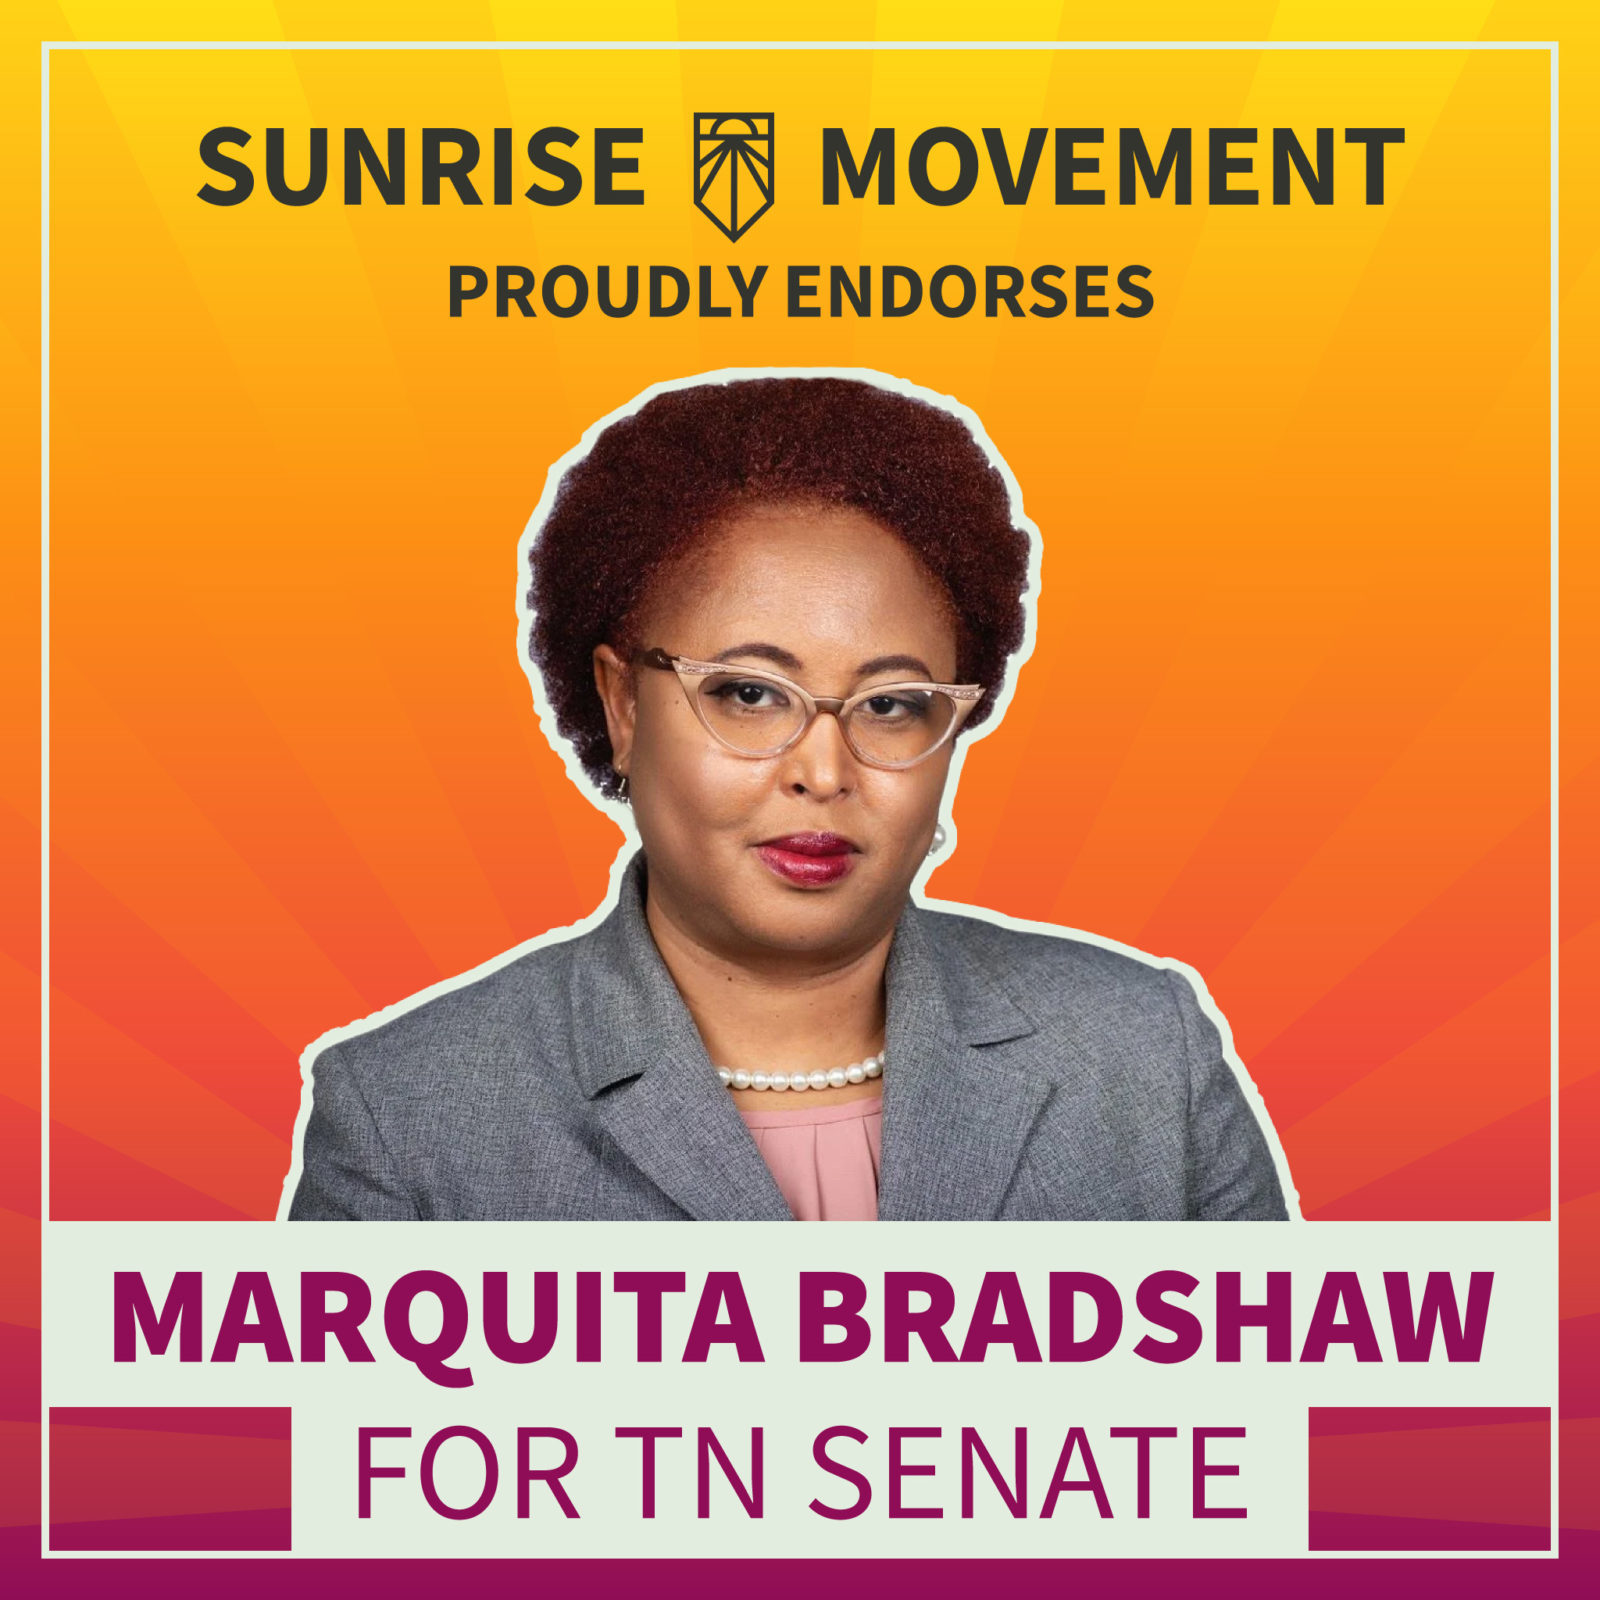 Een foto van Marquita Bradshaw met tekst: Sunrise Movement onderschrijft met trots Marquita Bradshaw voor TN Senate.